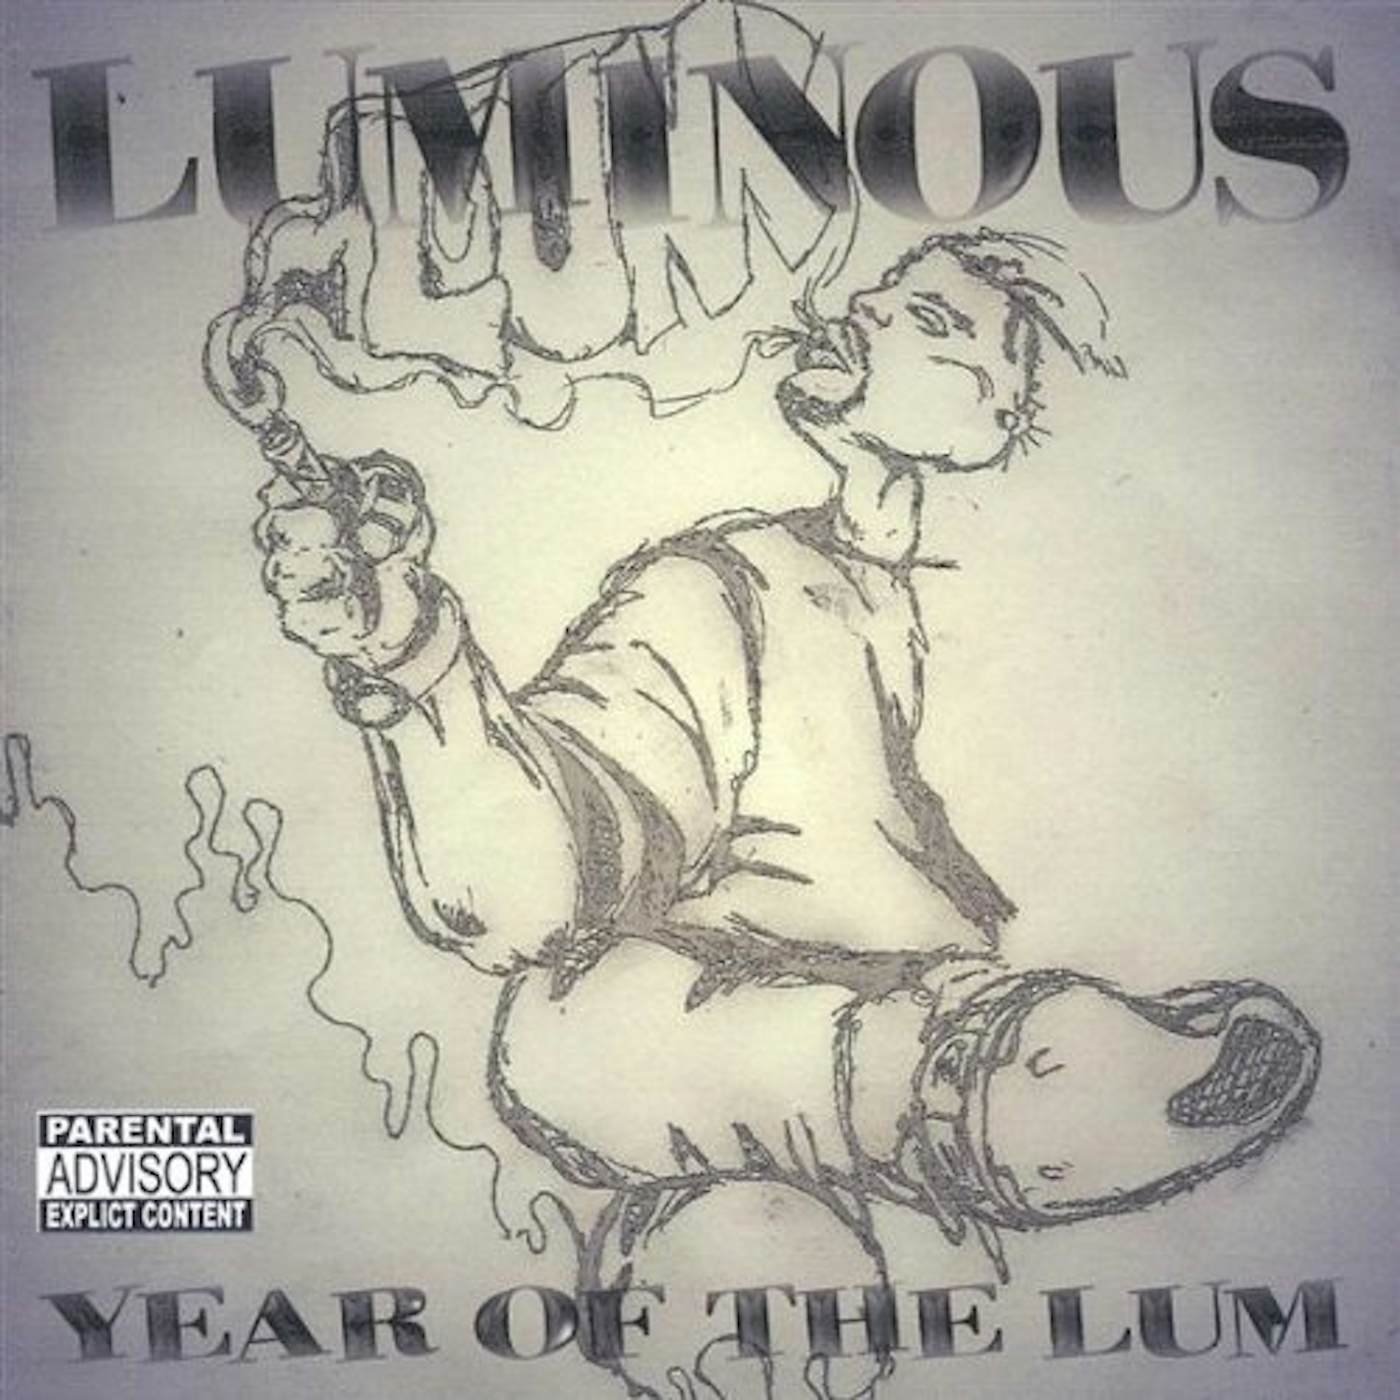 Luminous YEAR OF THE LUM CD